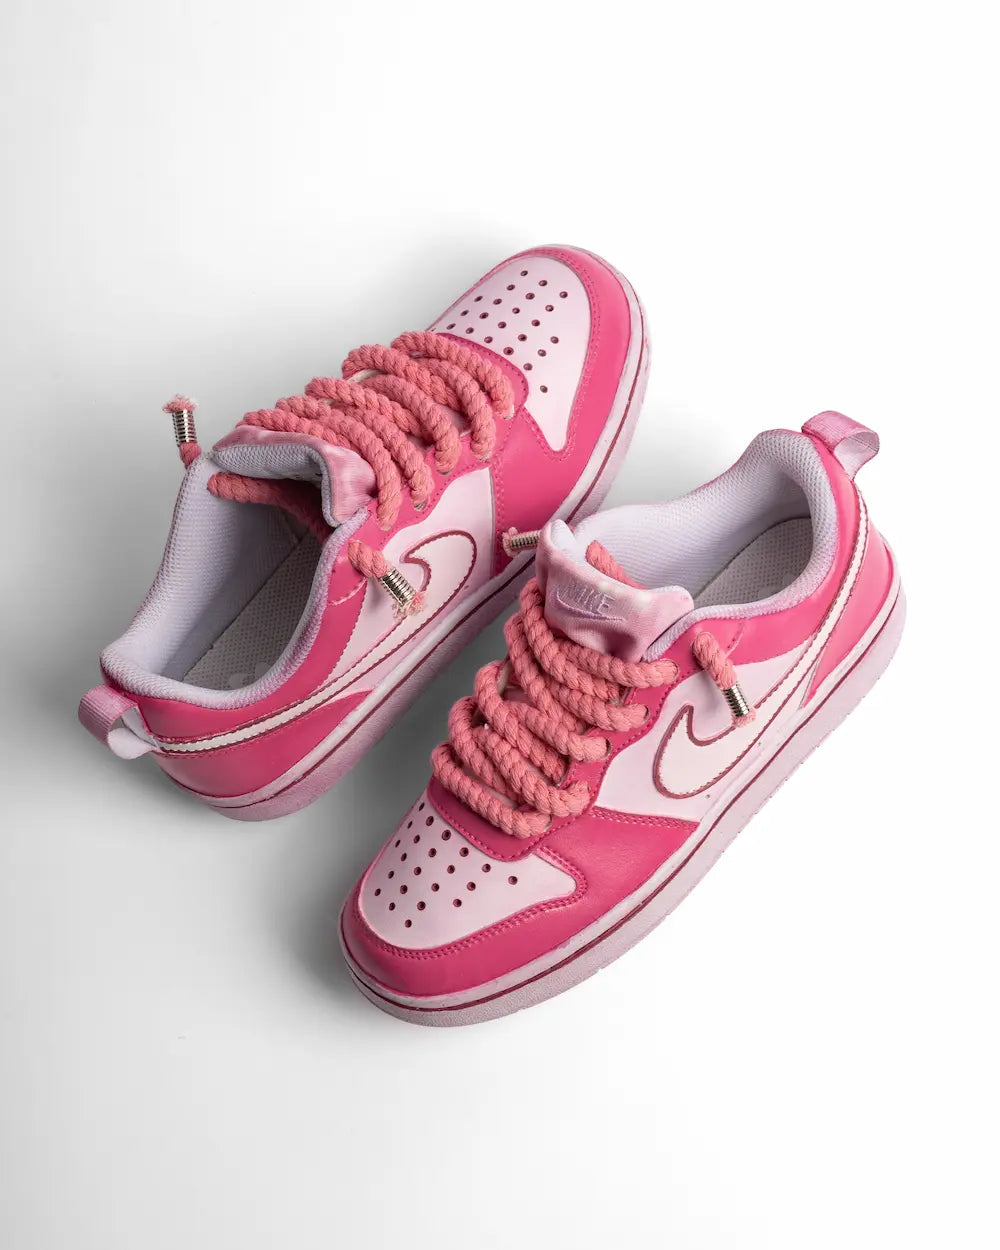 Nike Court Borough personalizzata con tintura in due tonalità di rosa e lacci in corda rosa pastello